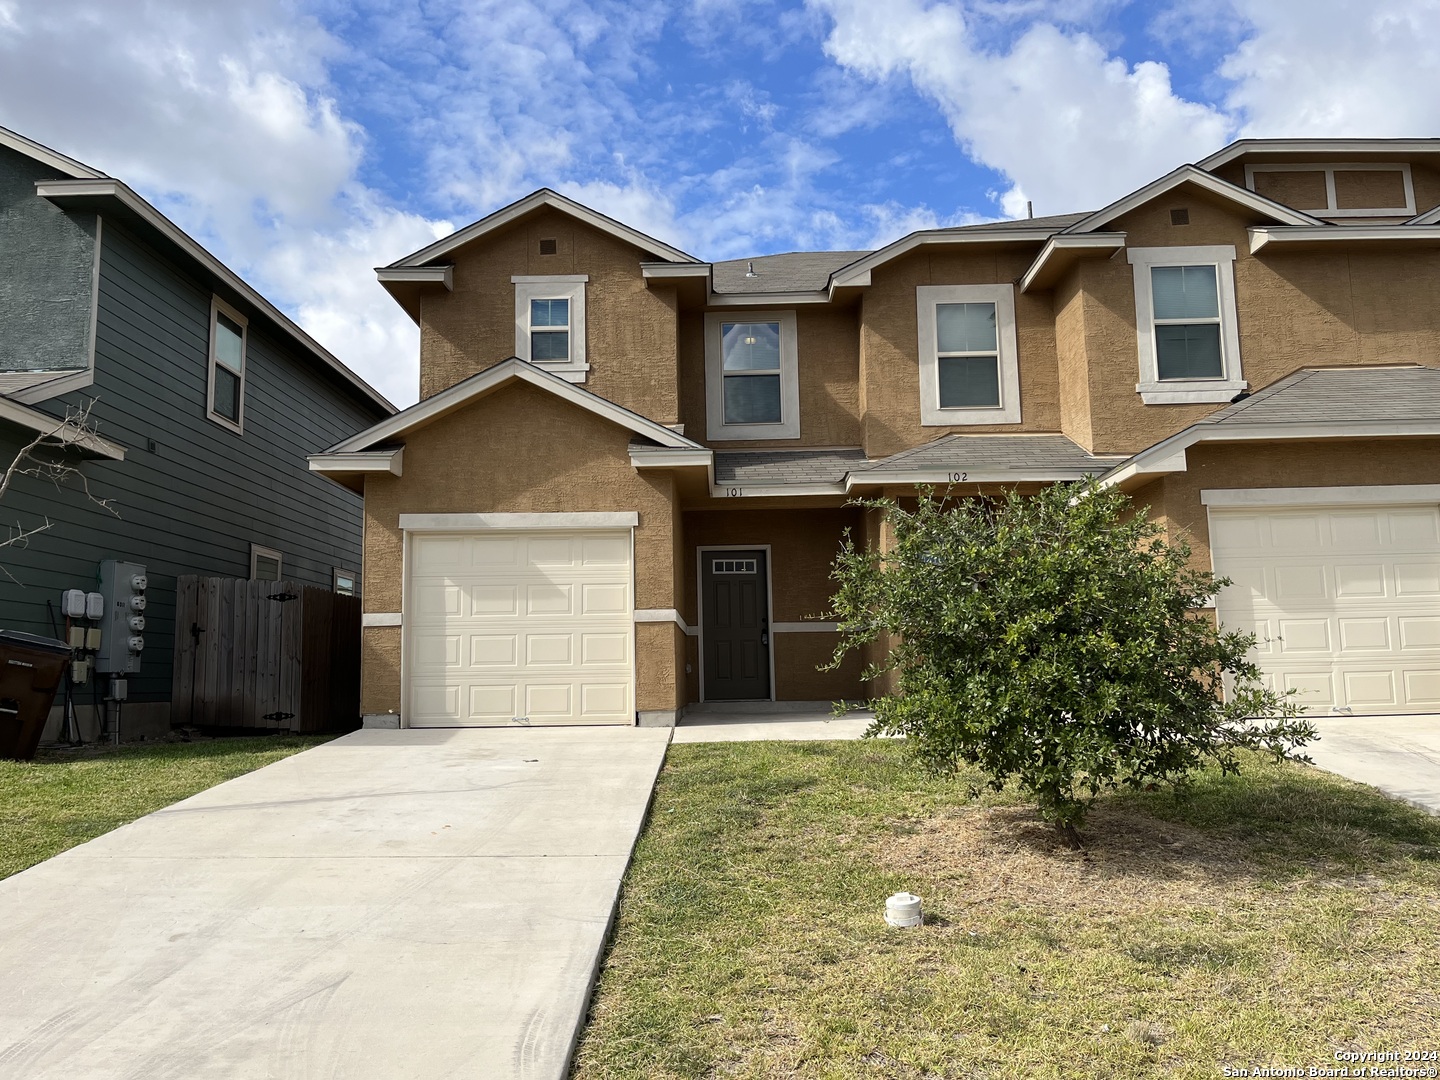 View San Antonio, TX 78244 multi-family property